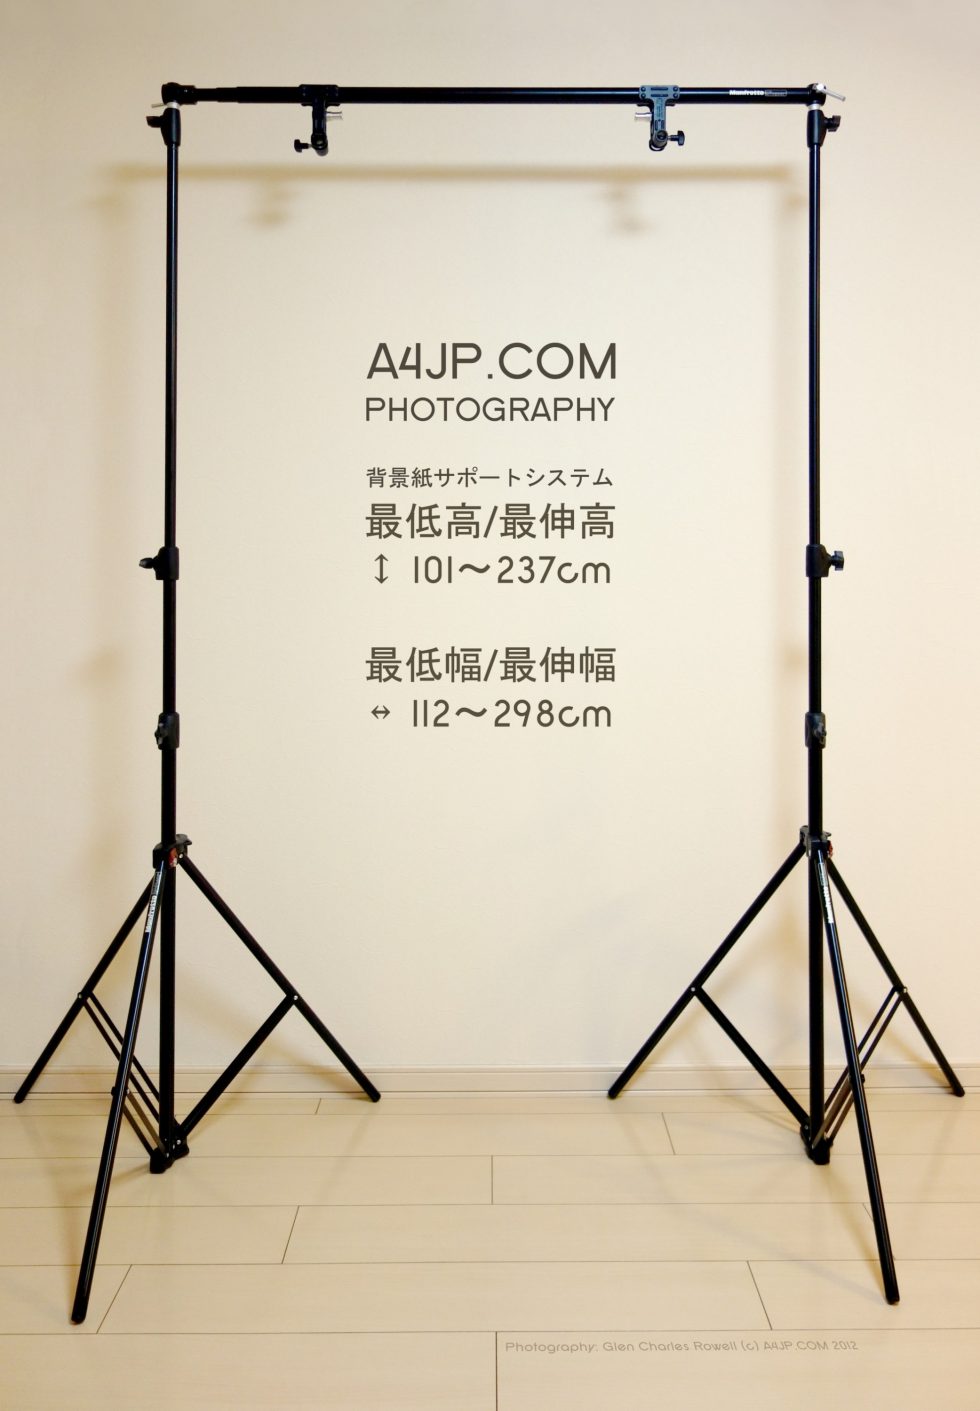 Photography Studio